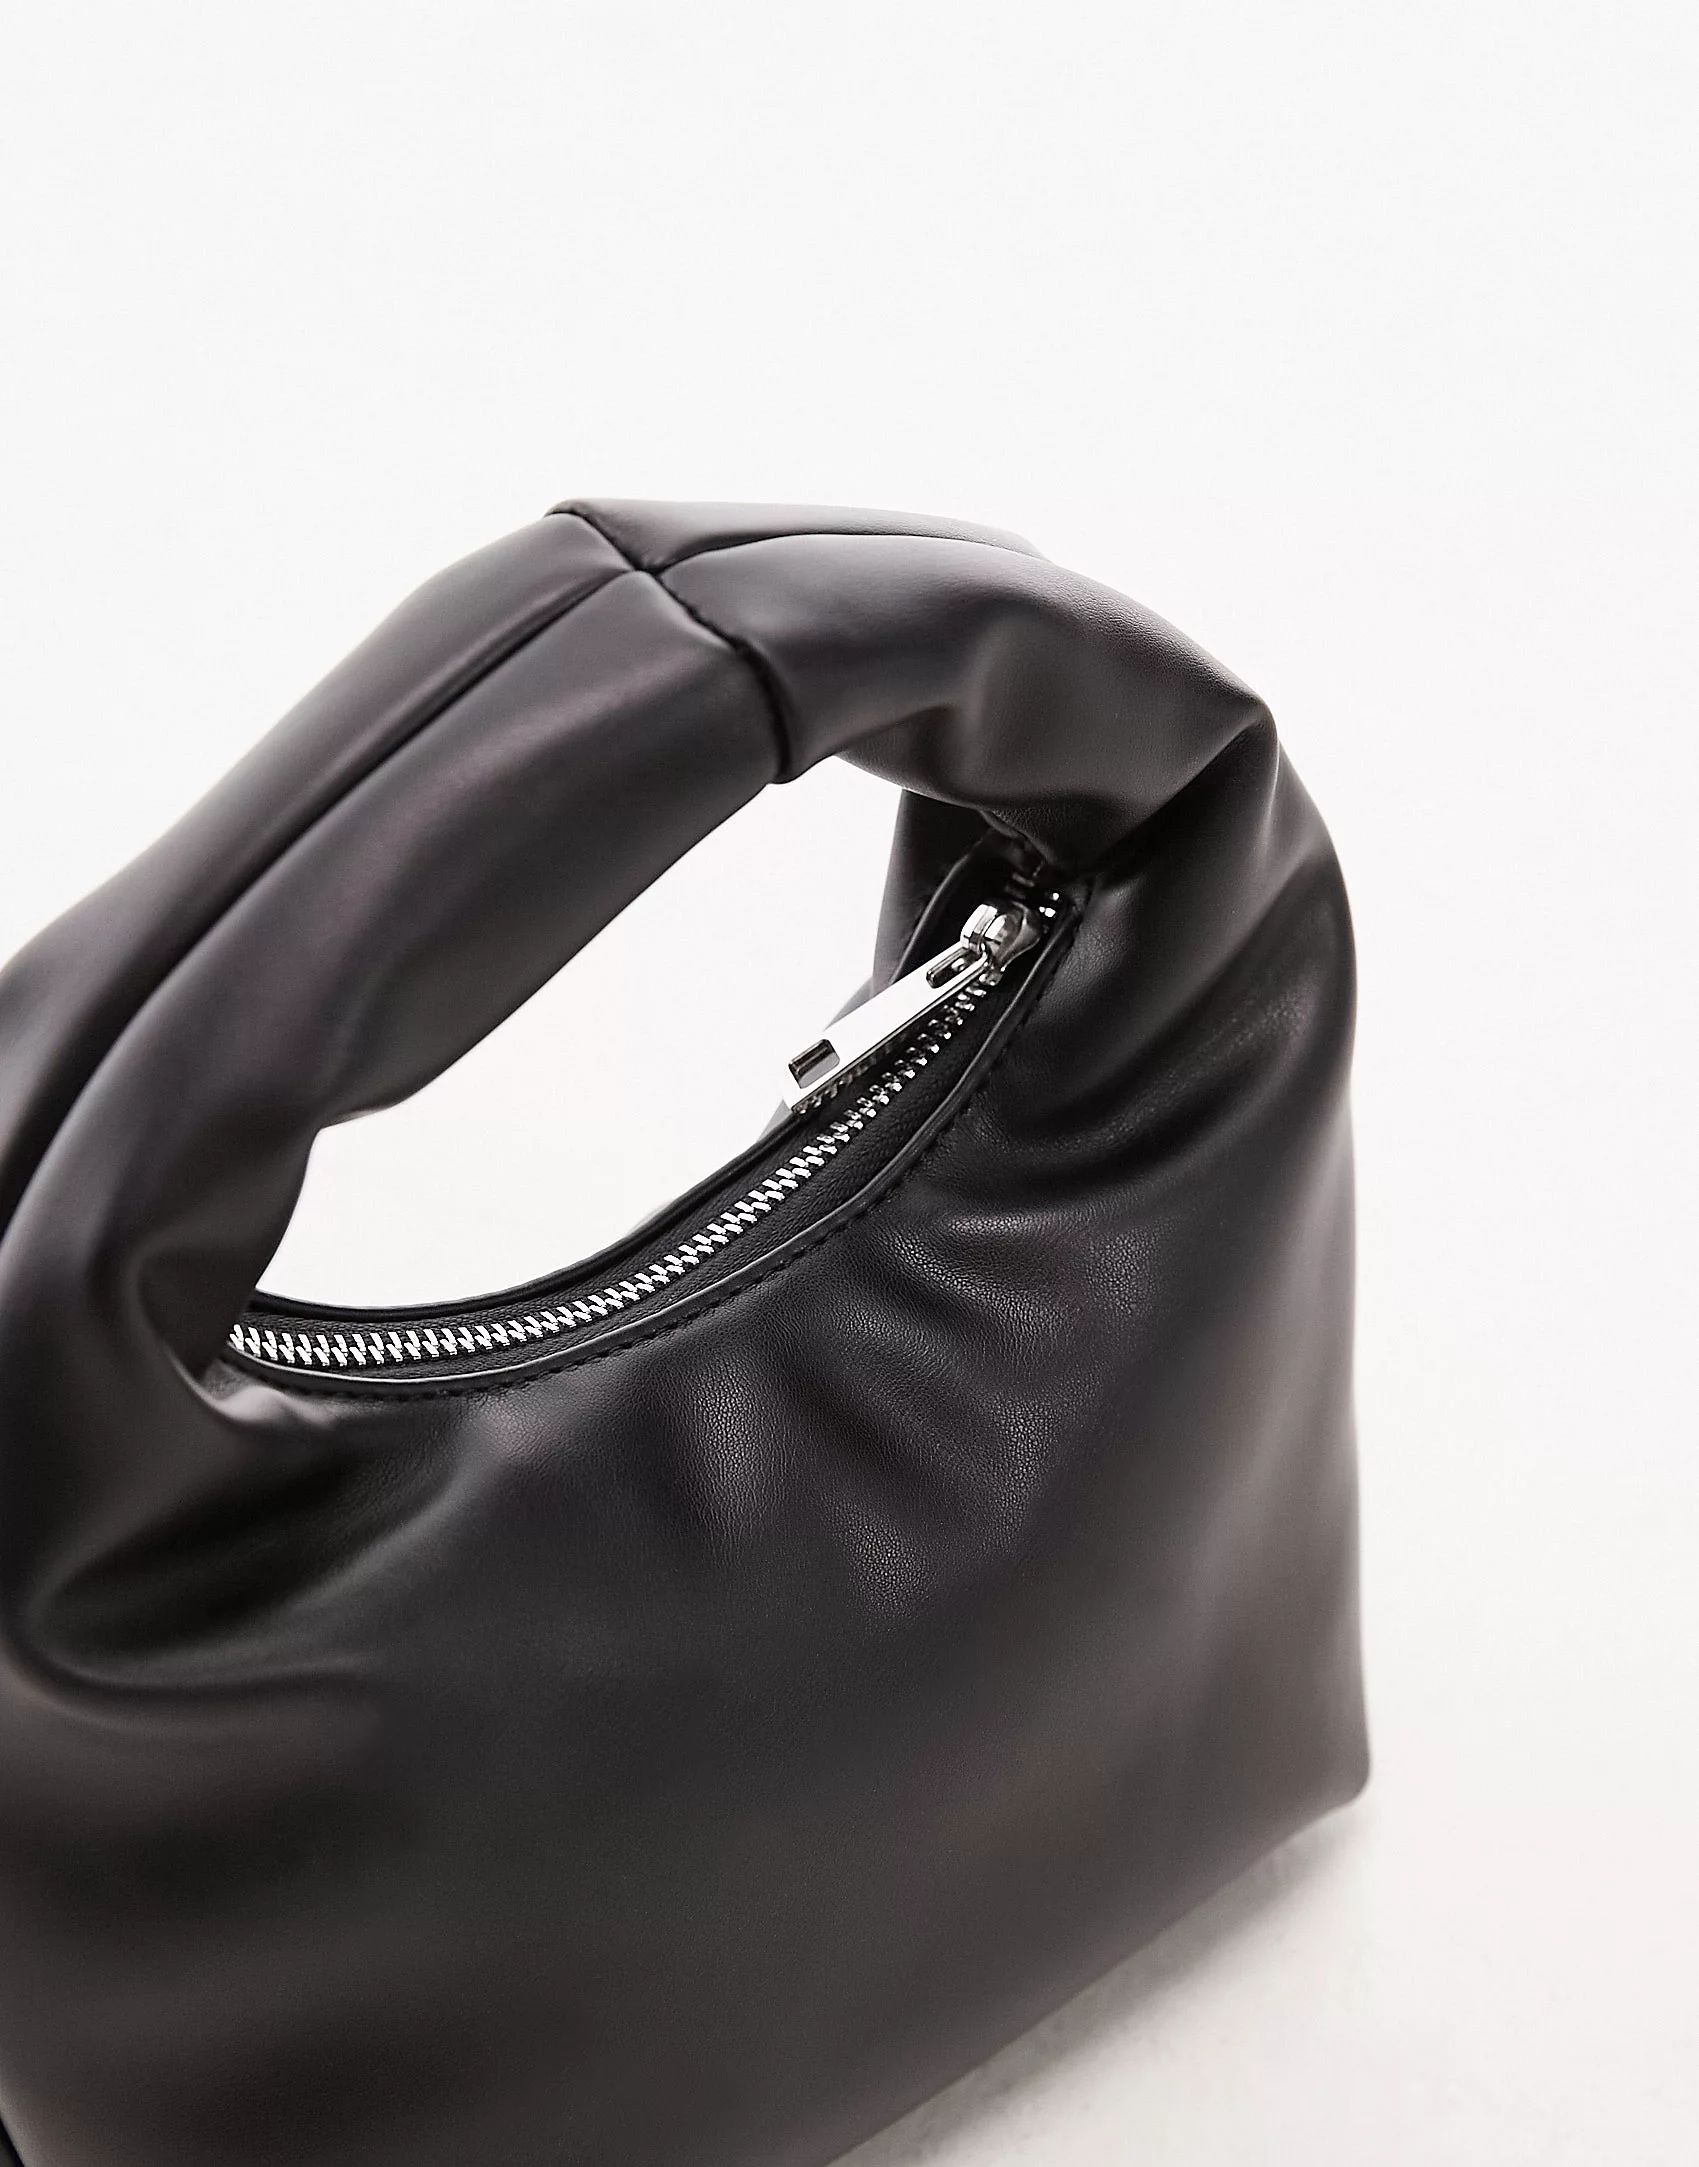 Topshop Groovy puffy grab bag in black | ASOS (Global)